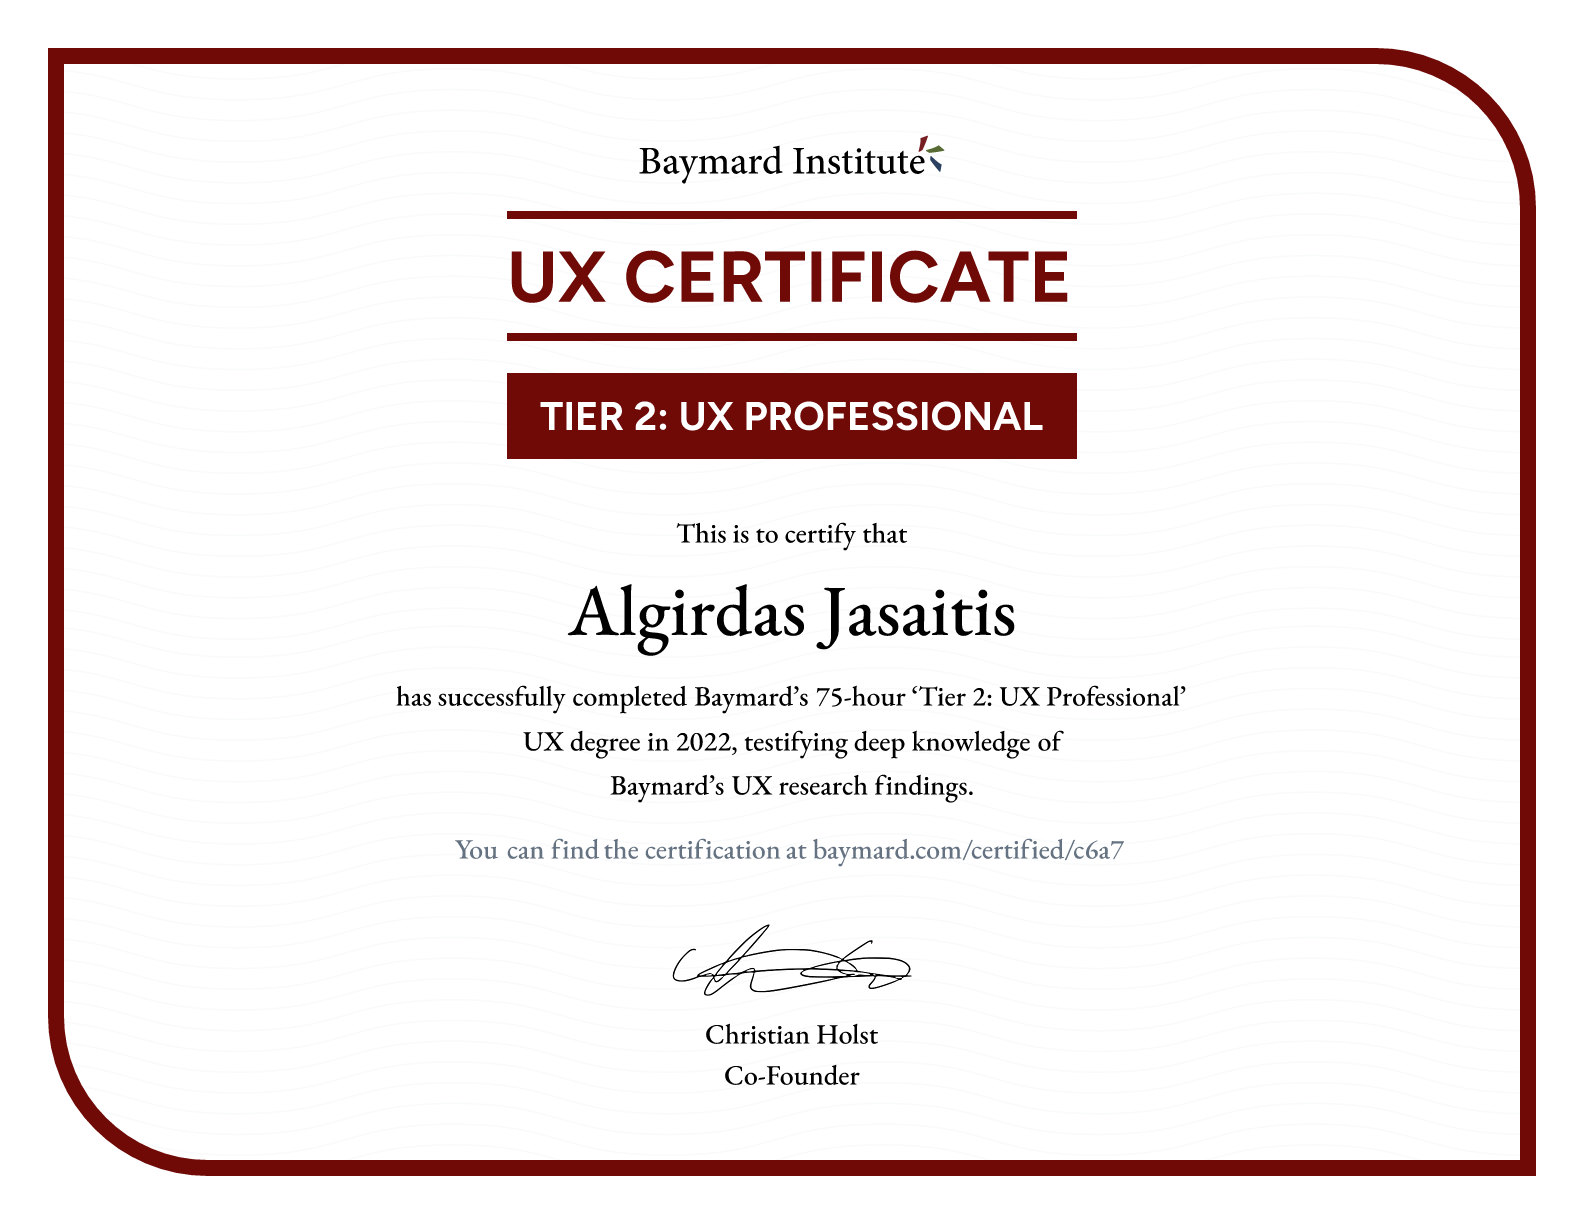 Algirdas Jasaitis’s certificate